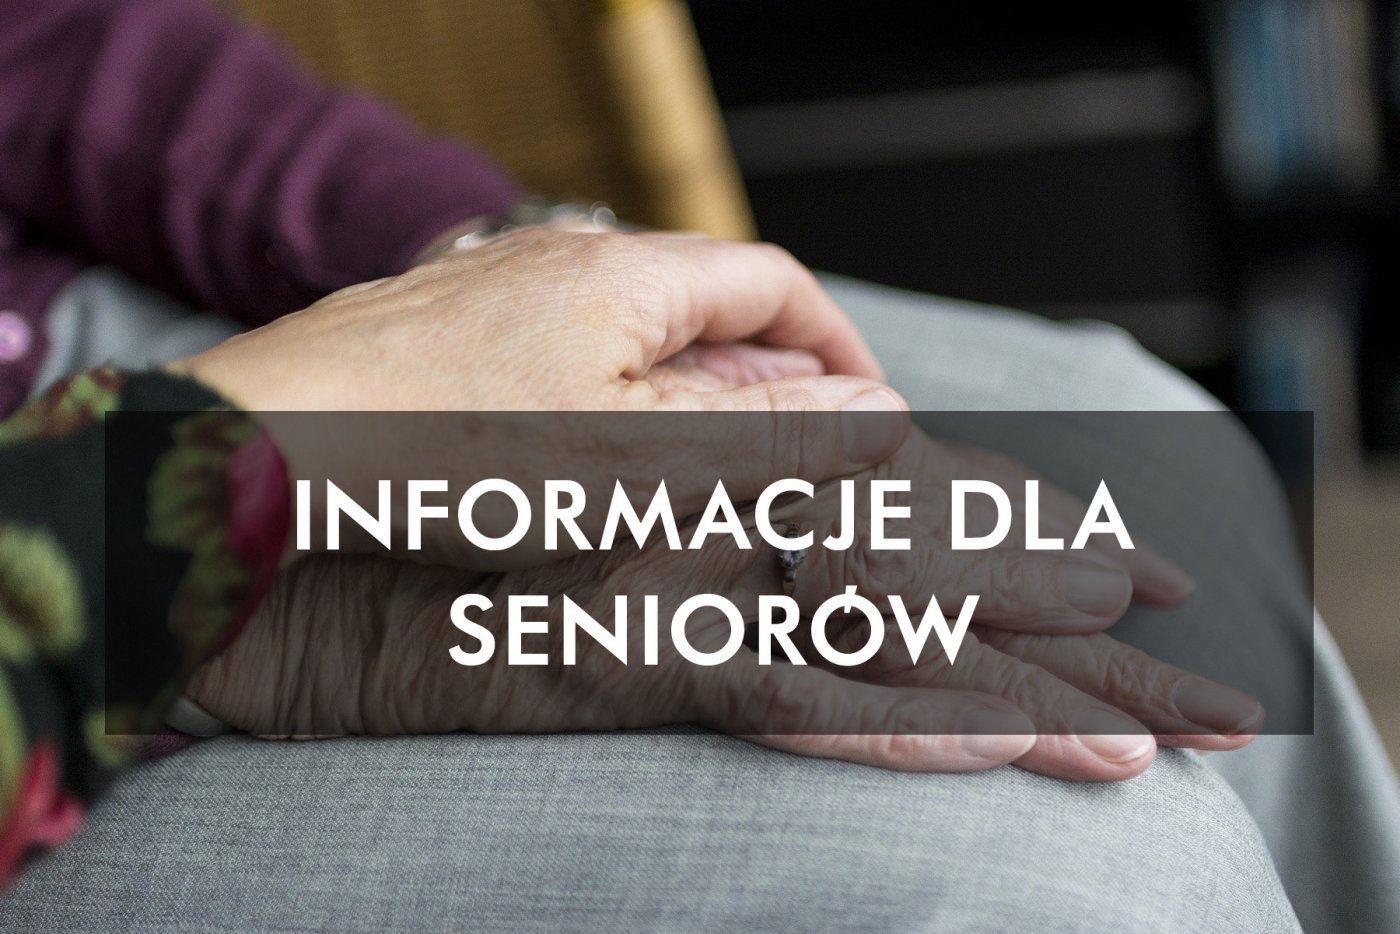 Informacje dla seniorów // mat.prasowe